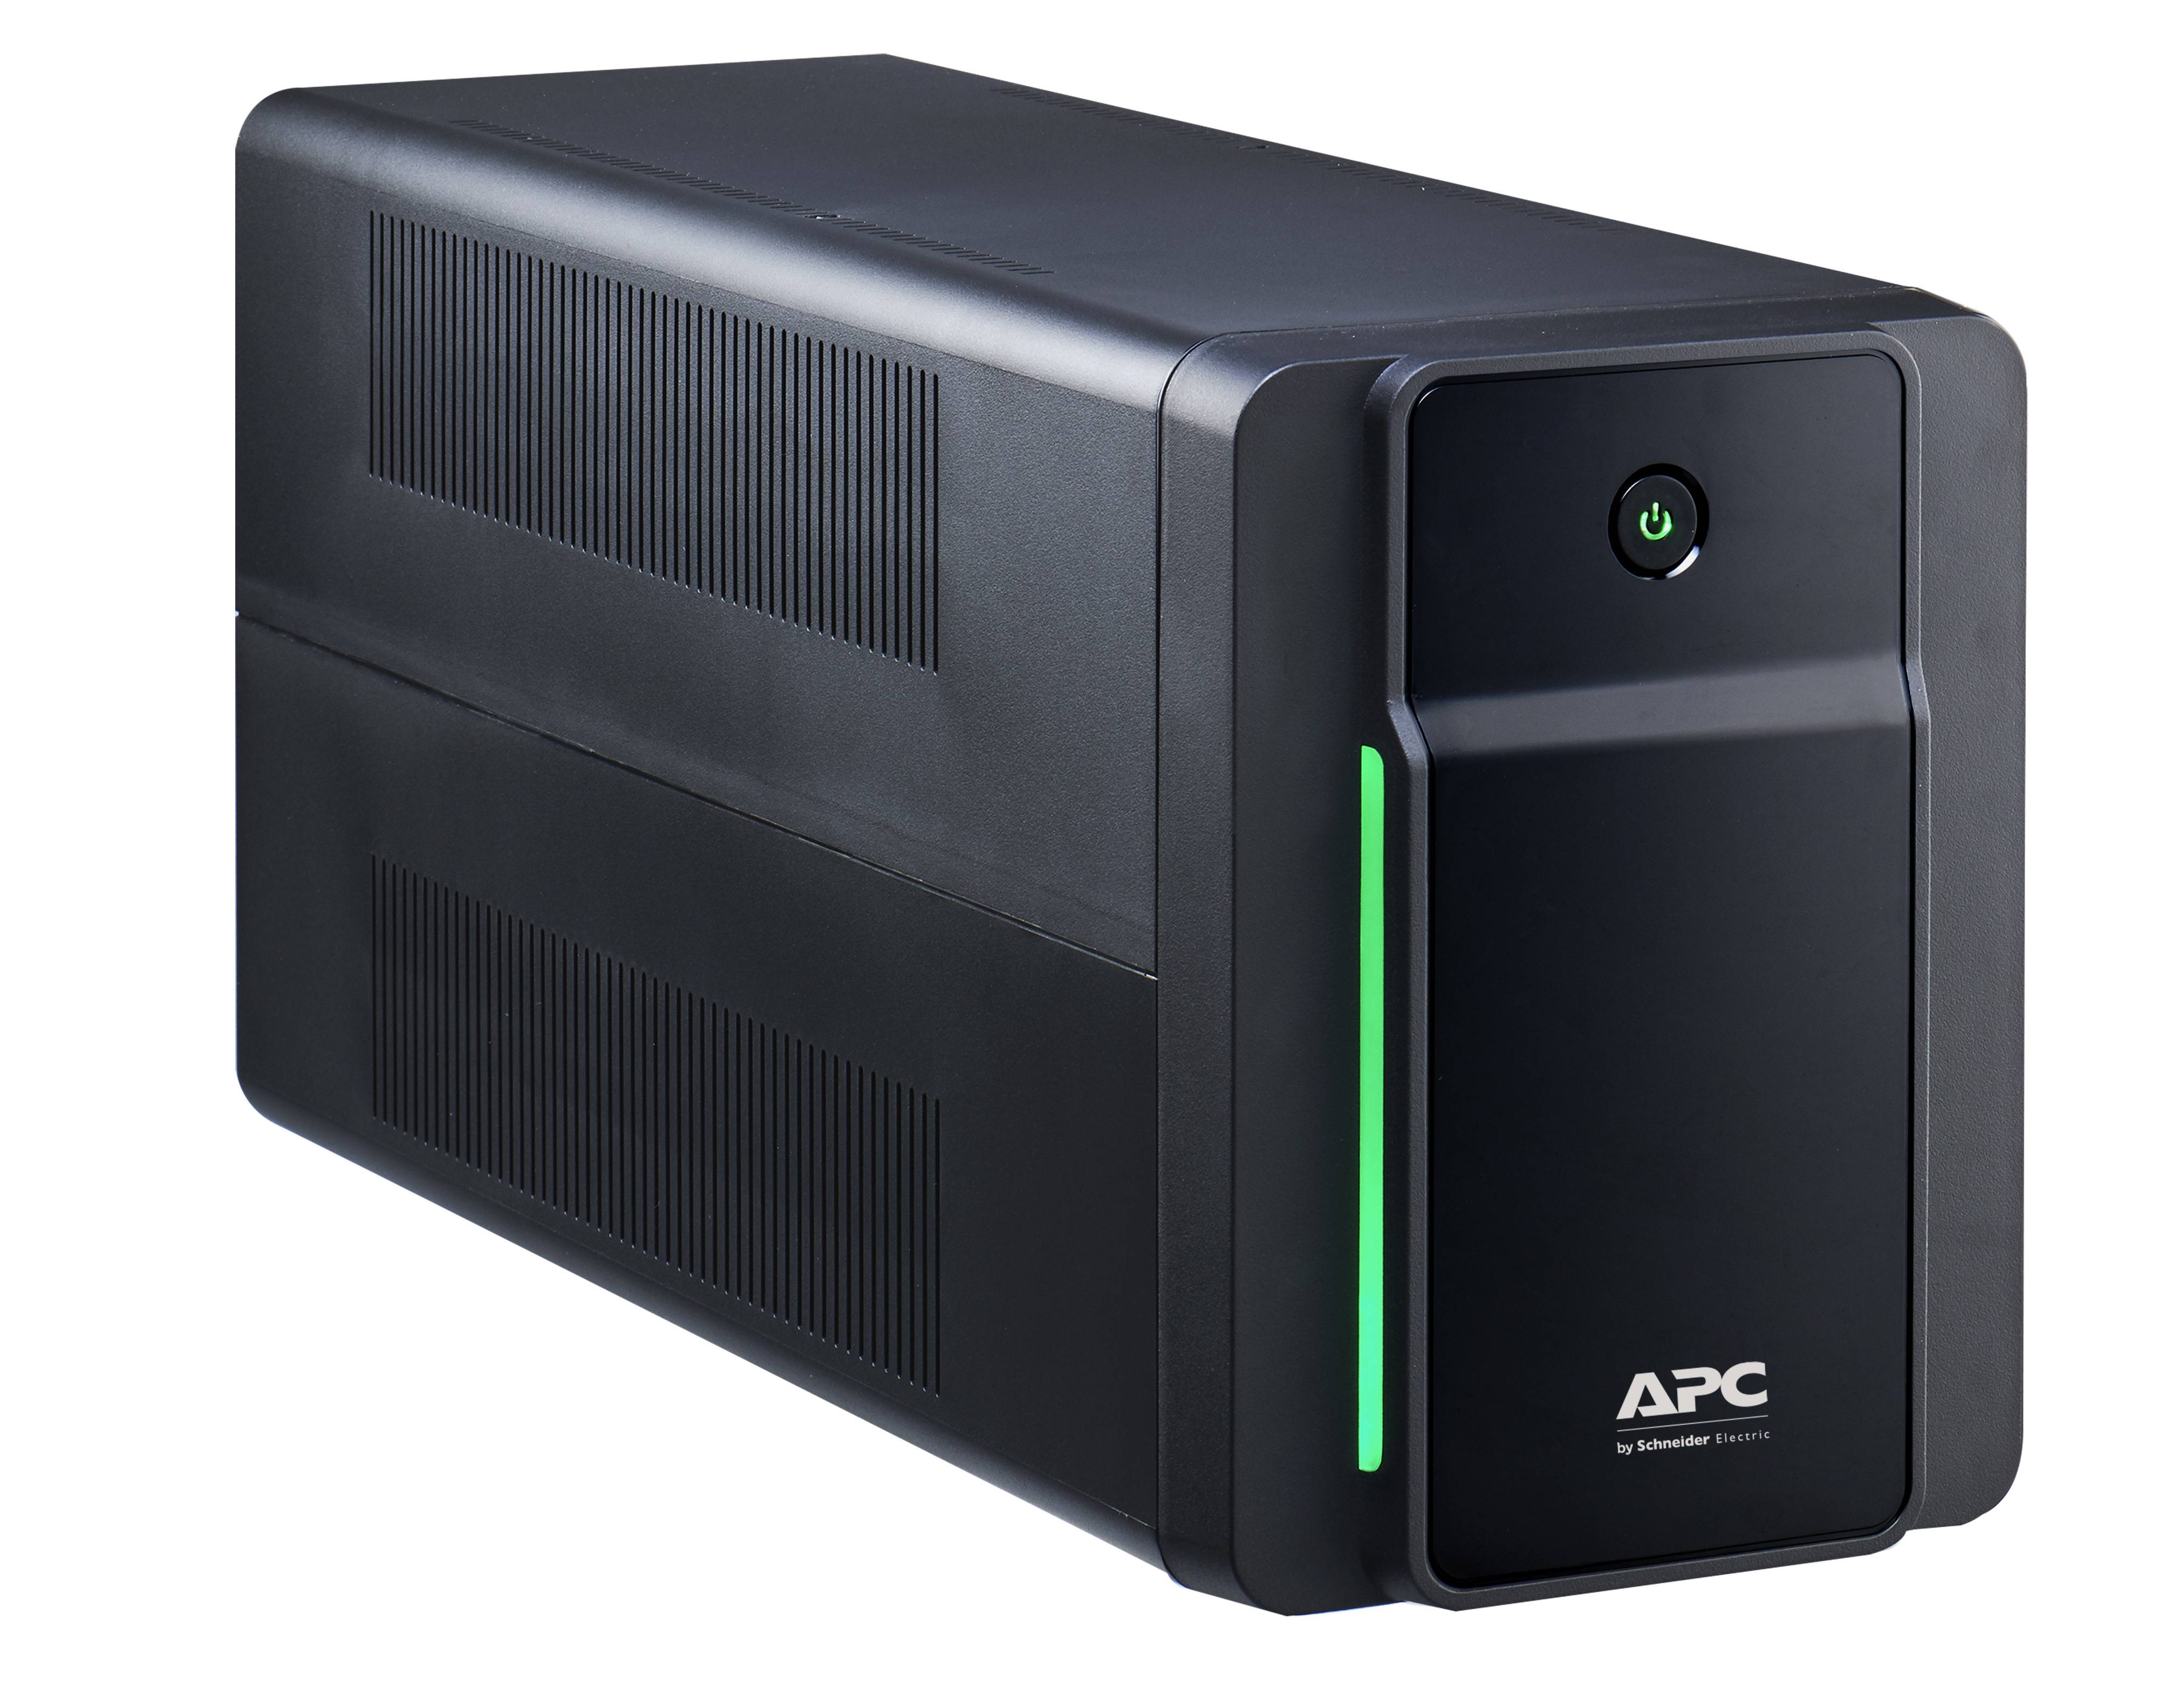 Rca Informatique - Image du produit : APC BACK-UPS 2200VA 230V AVR IEC SOCKETS